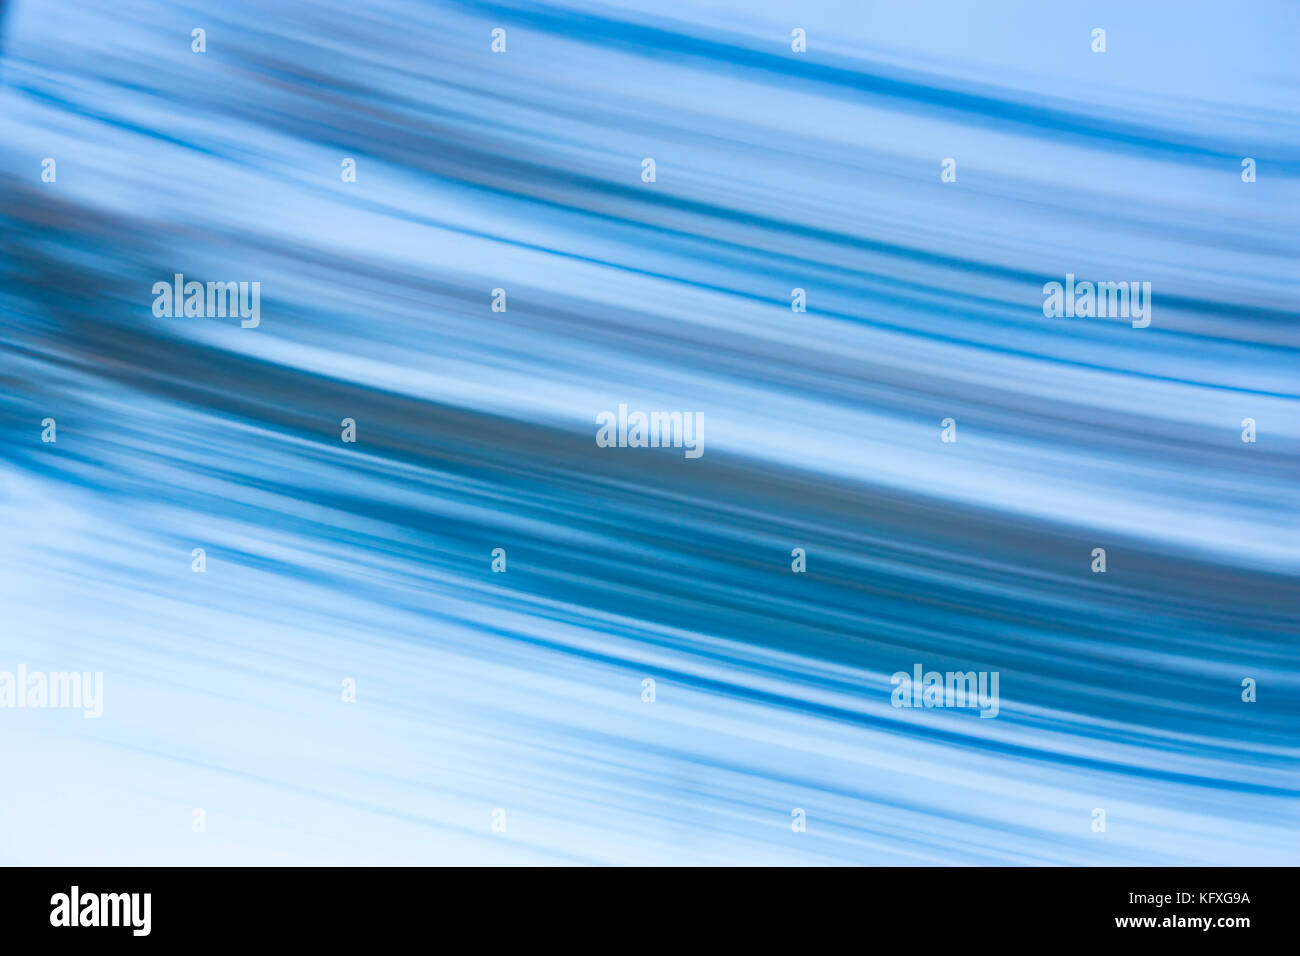 Abstrakte blurry weich und glatt blaue Linien im Zeitraffer Stockfoto